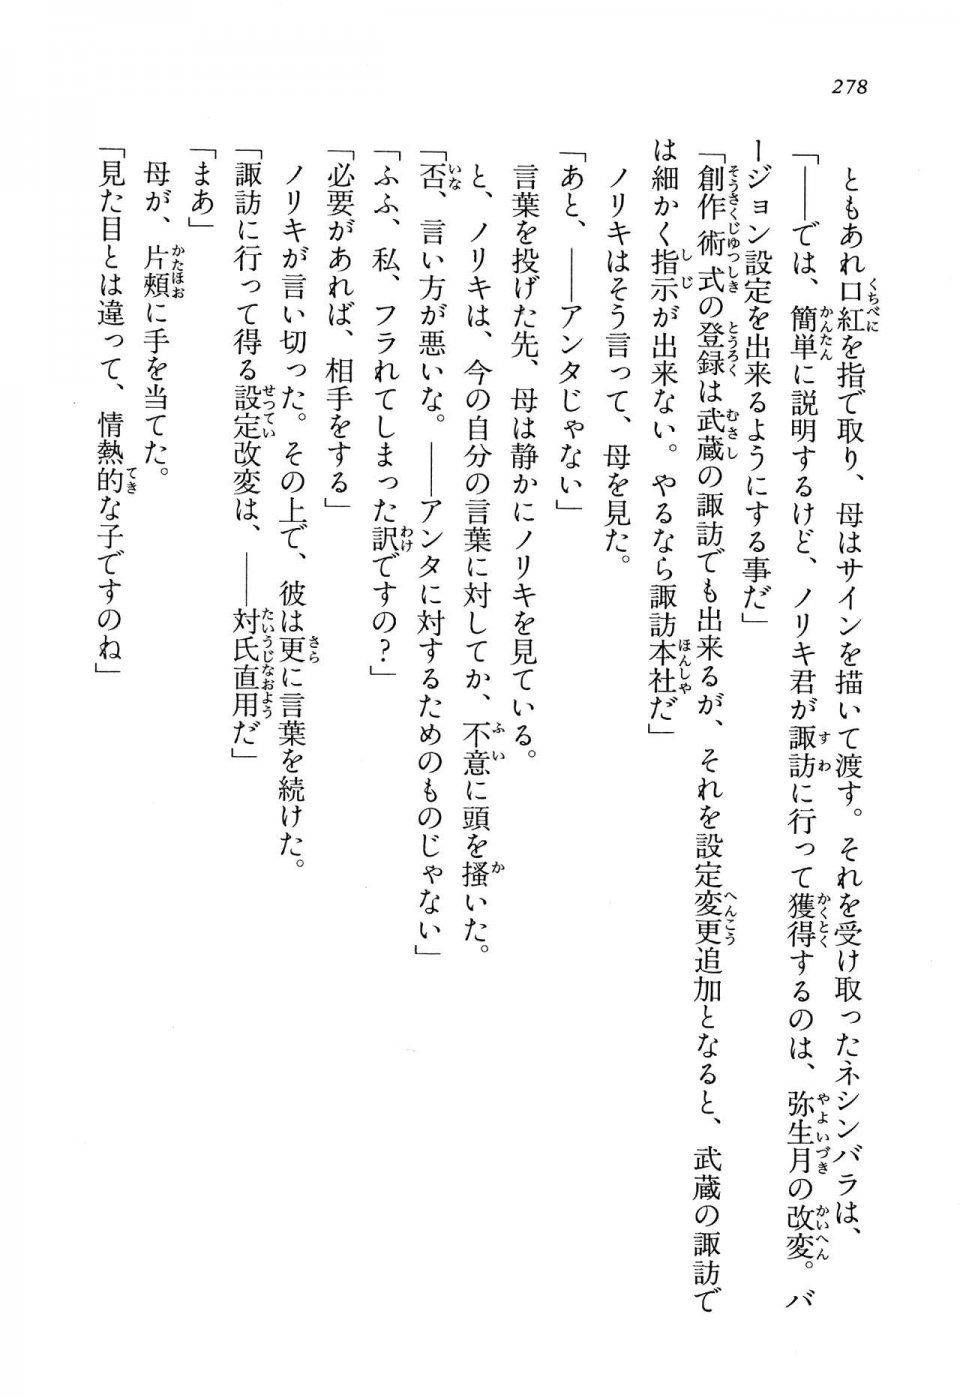 Kyoukai Senjou no Horizon LN Vol 13(6A) - Photo #278